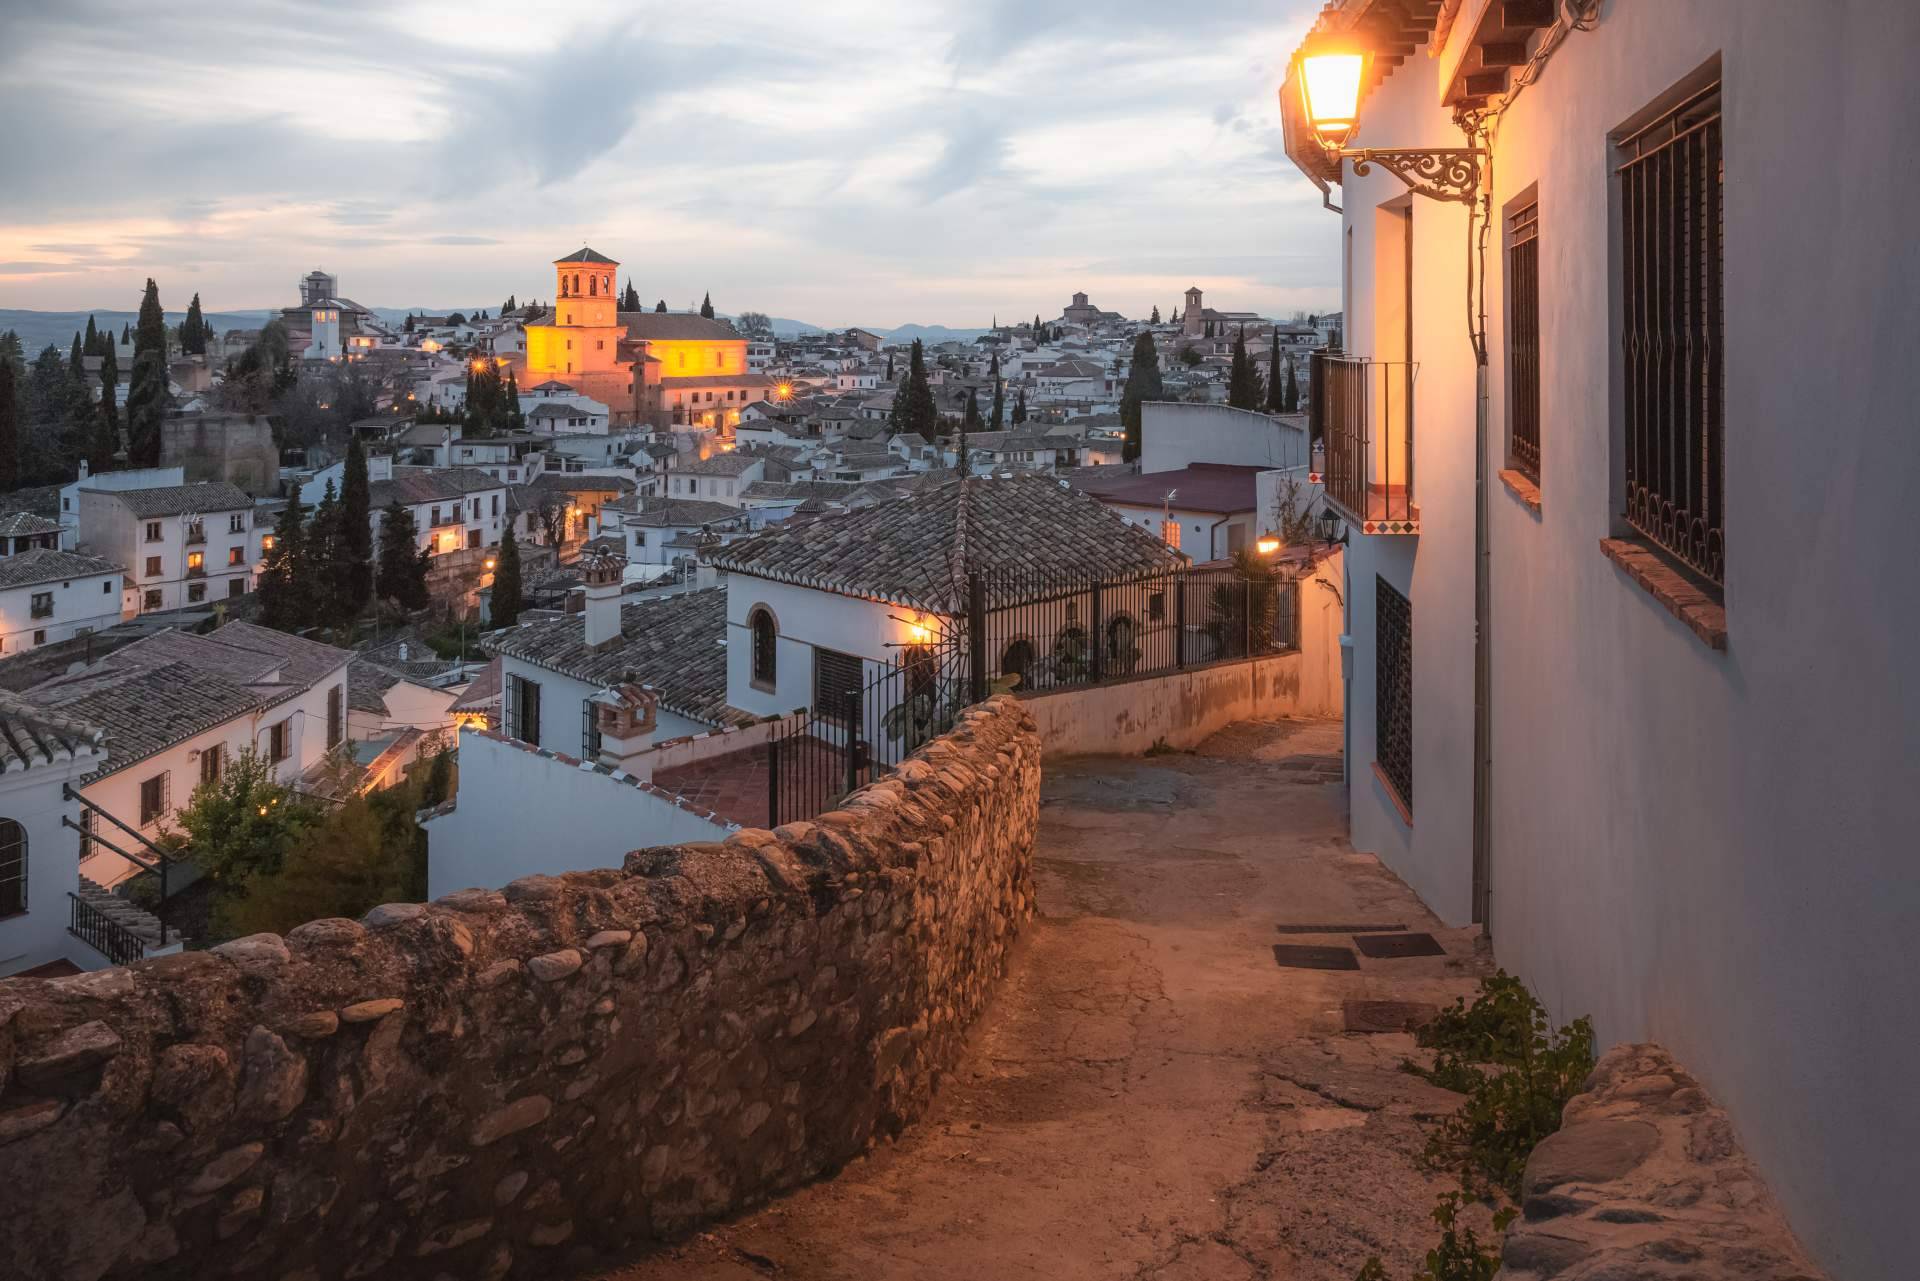 Viajes con encanto en el Albaicín de Granada, de la mano de Granada Te Guía